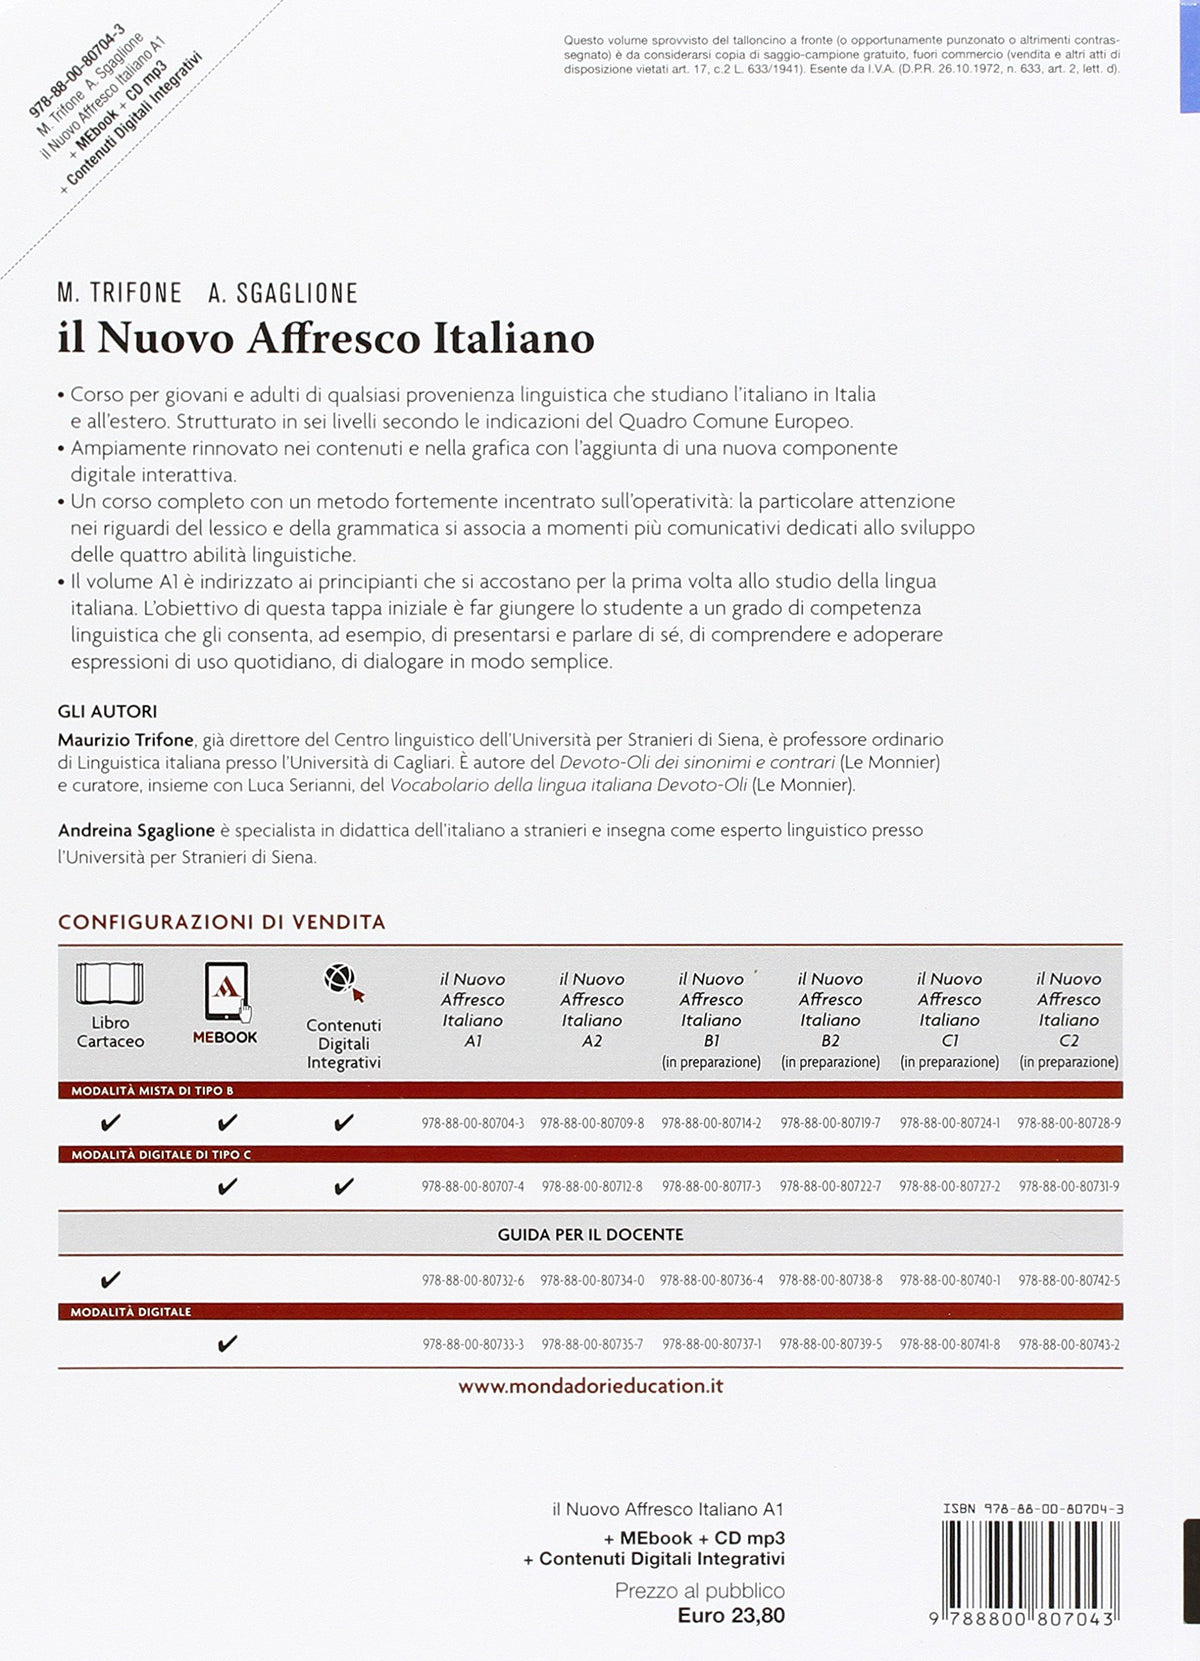 Il nuovo Affresco italiano A1. Corso di lingua italiana per stranieri.